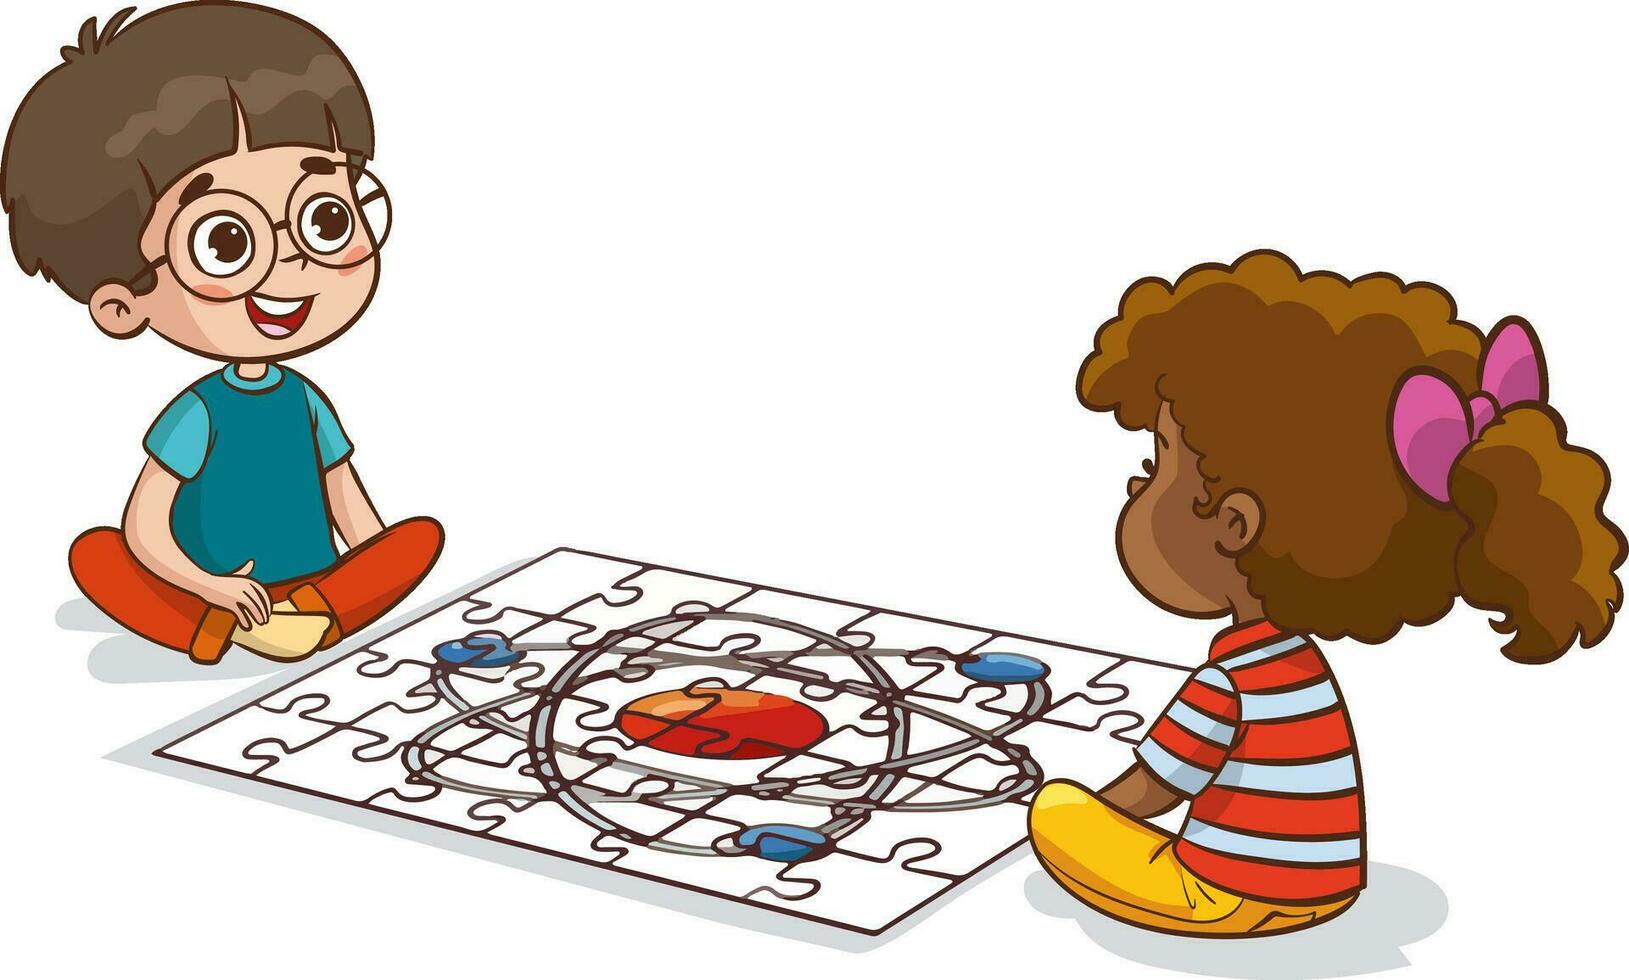 vector ilustración de niños jugando rompecabezas